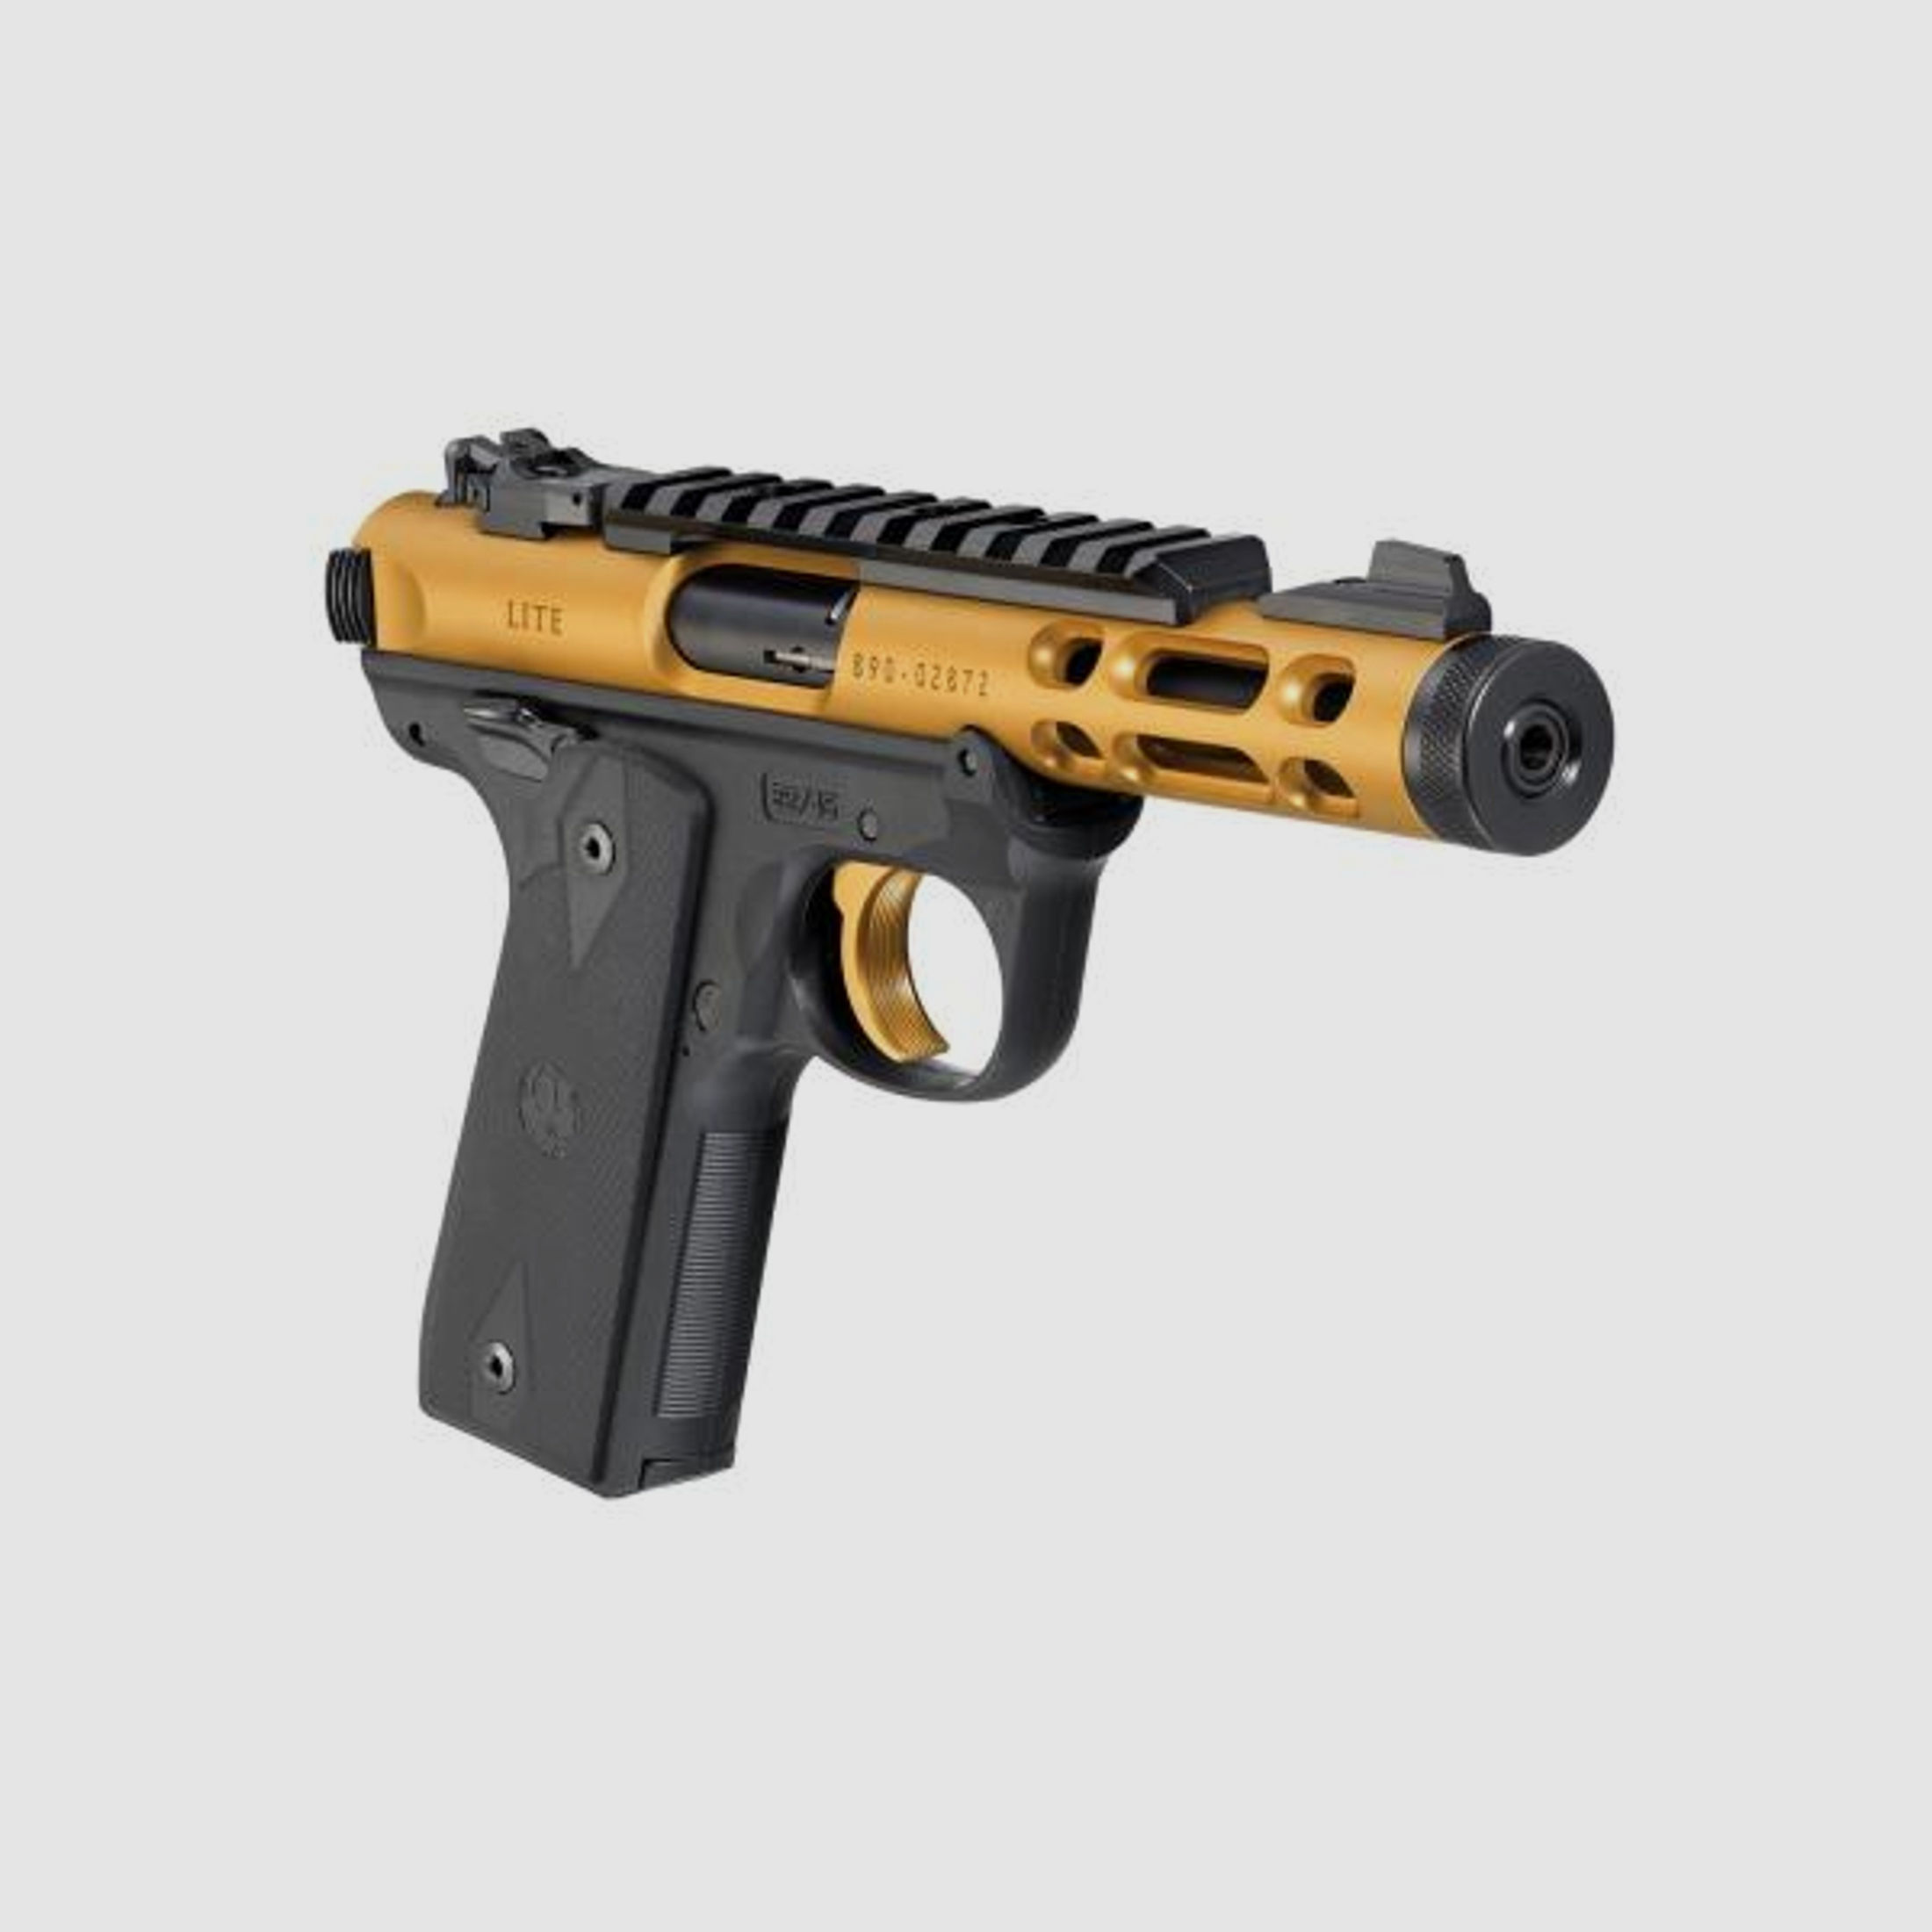 RUGER KK-Pistole Mod. Mark IV 22/45 Lite .22lr    Gold